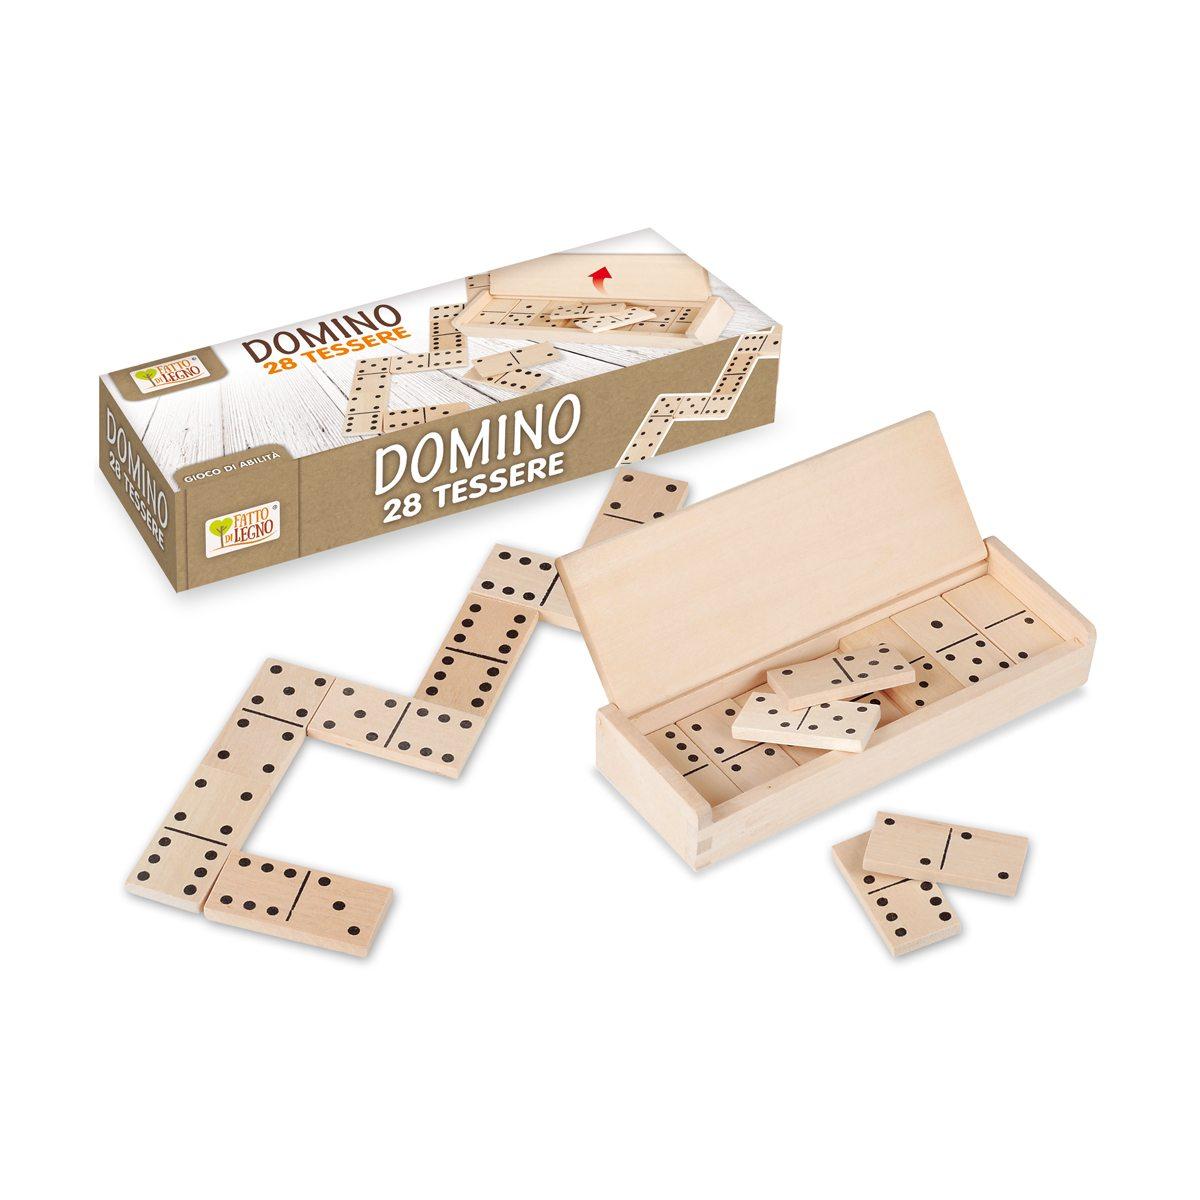 Domino 28 Tessere